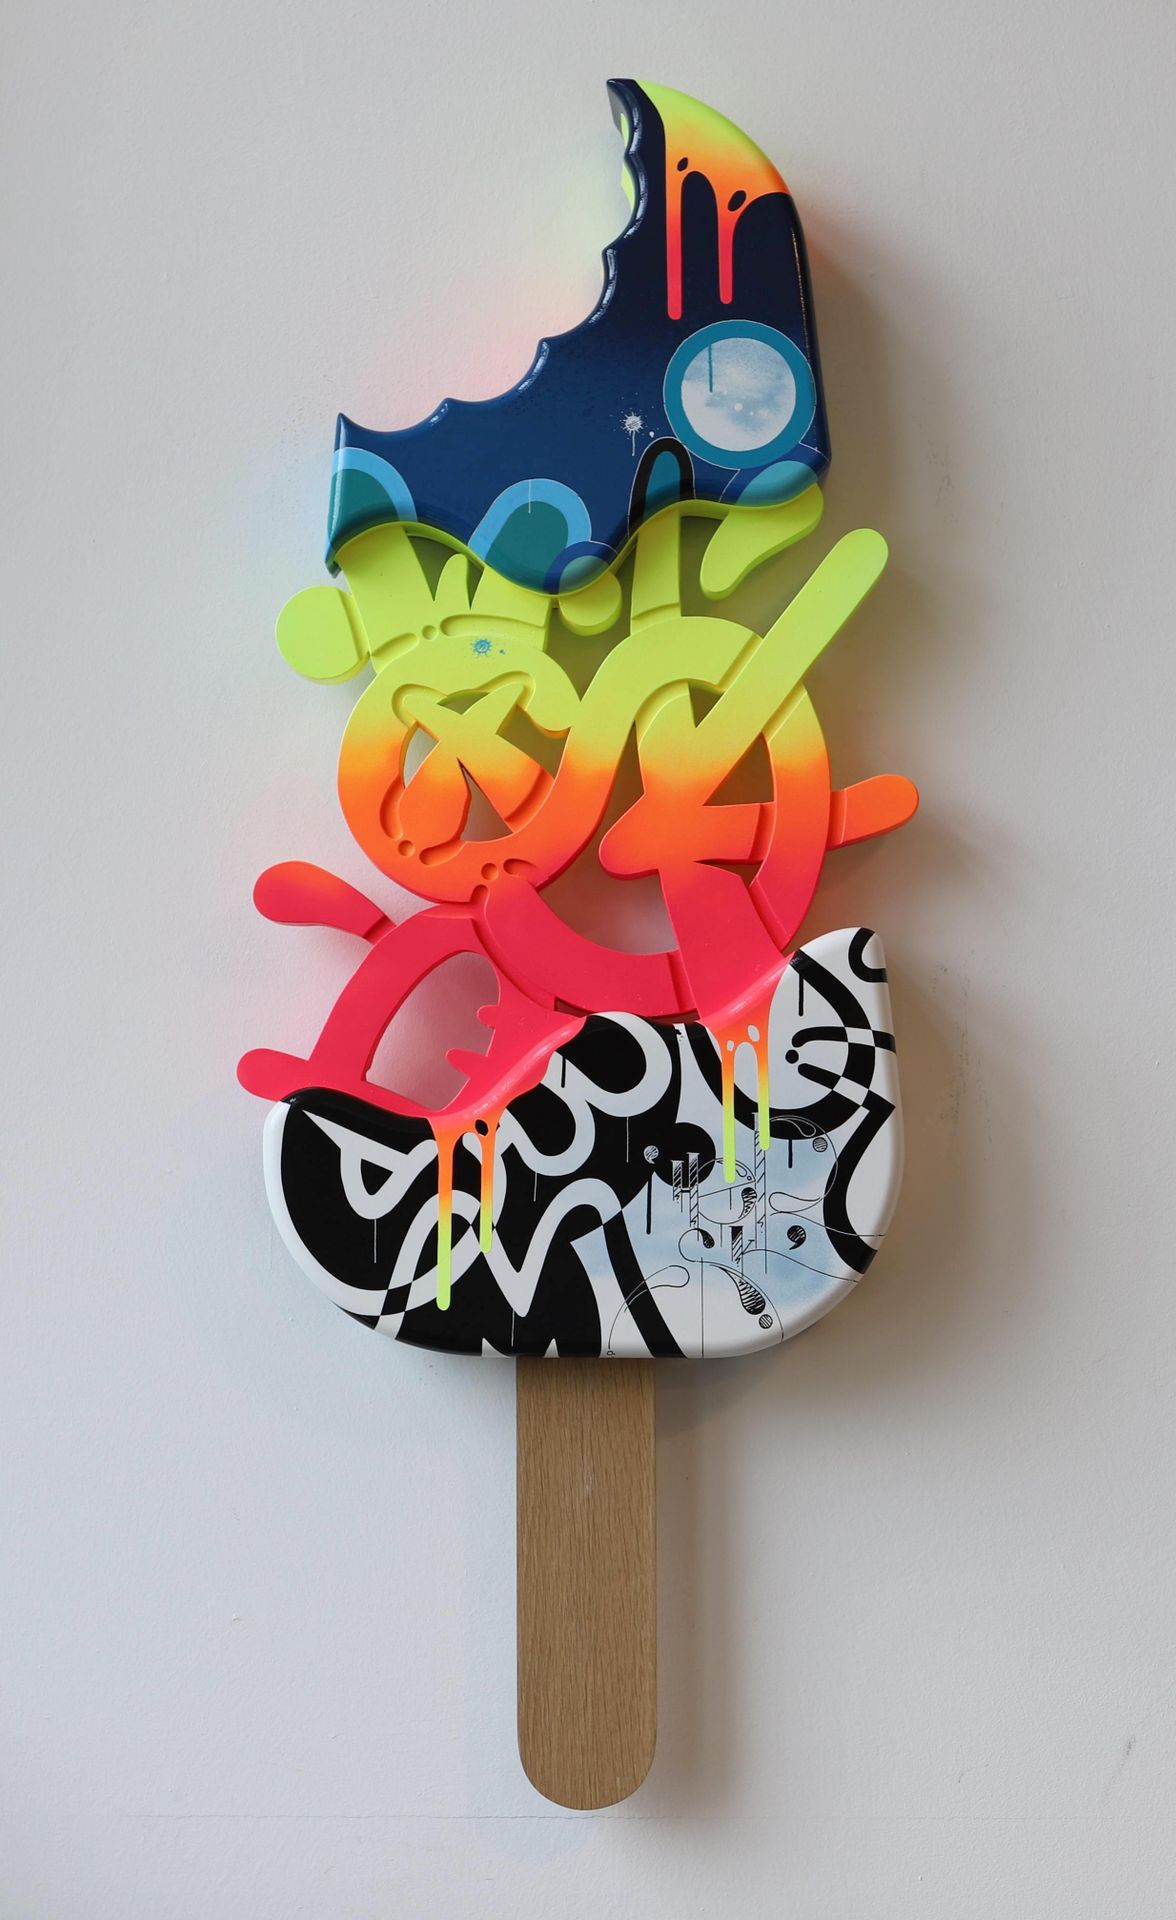 Null "¡Algo que chupar! XL" de HeRsK (nacido en 1979)

Escultura en aerosol y ac&hellip;